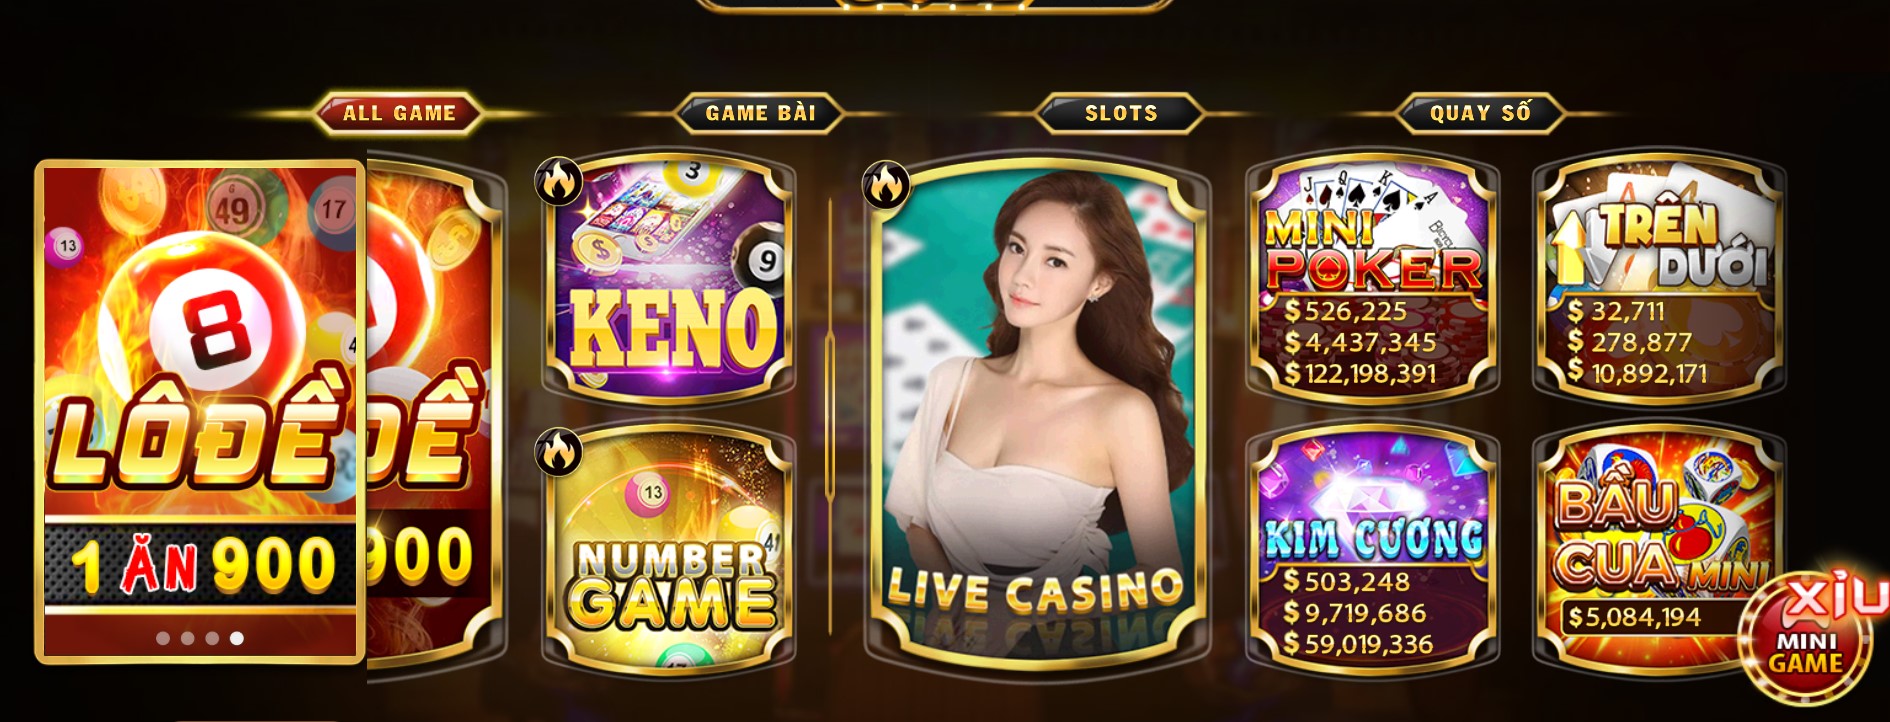 Sảnh Casino trực tuyến đầy sự cạnh tranh